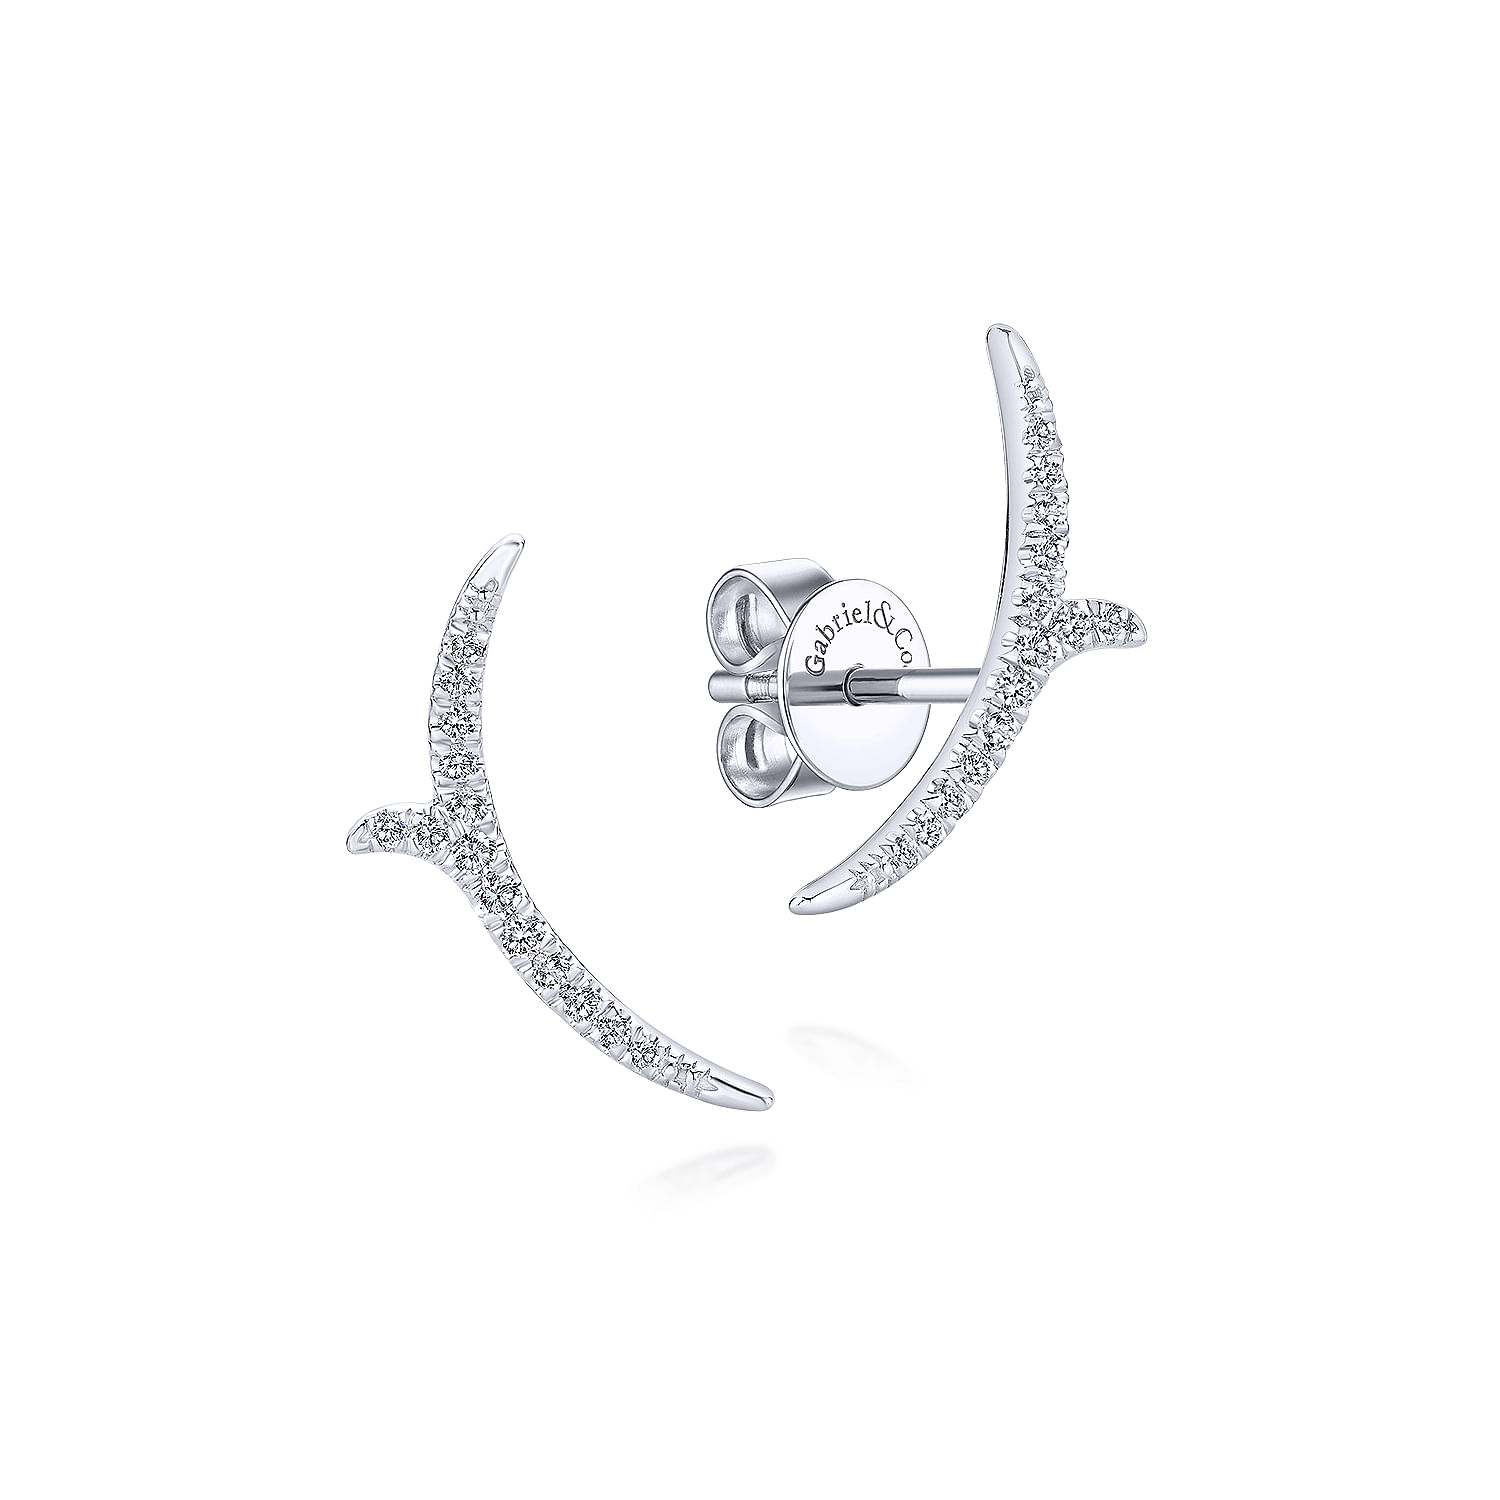 14K White Gold Curved Diamond Vine Stud Earrings